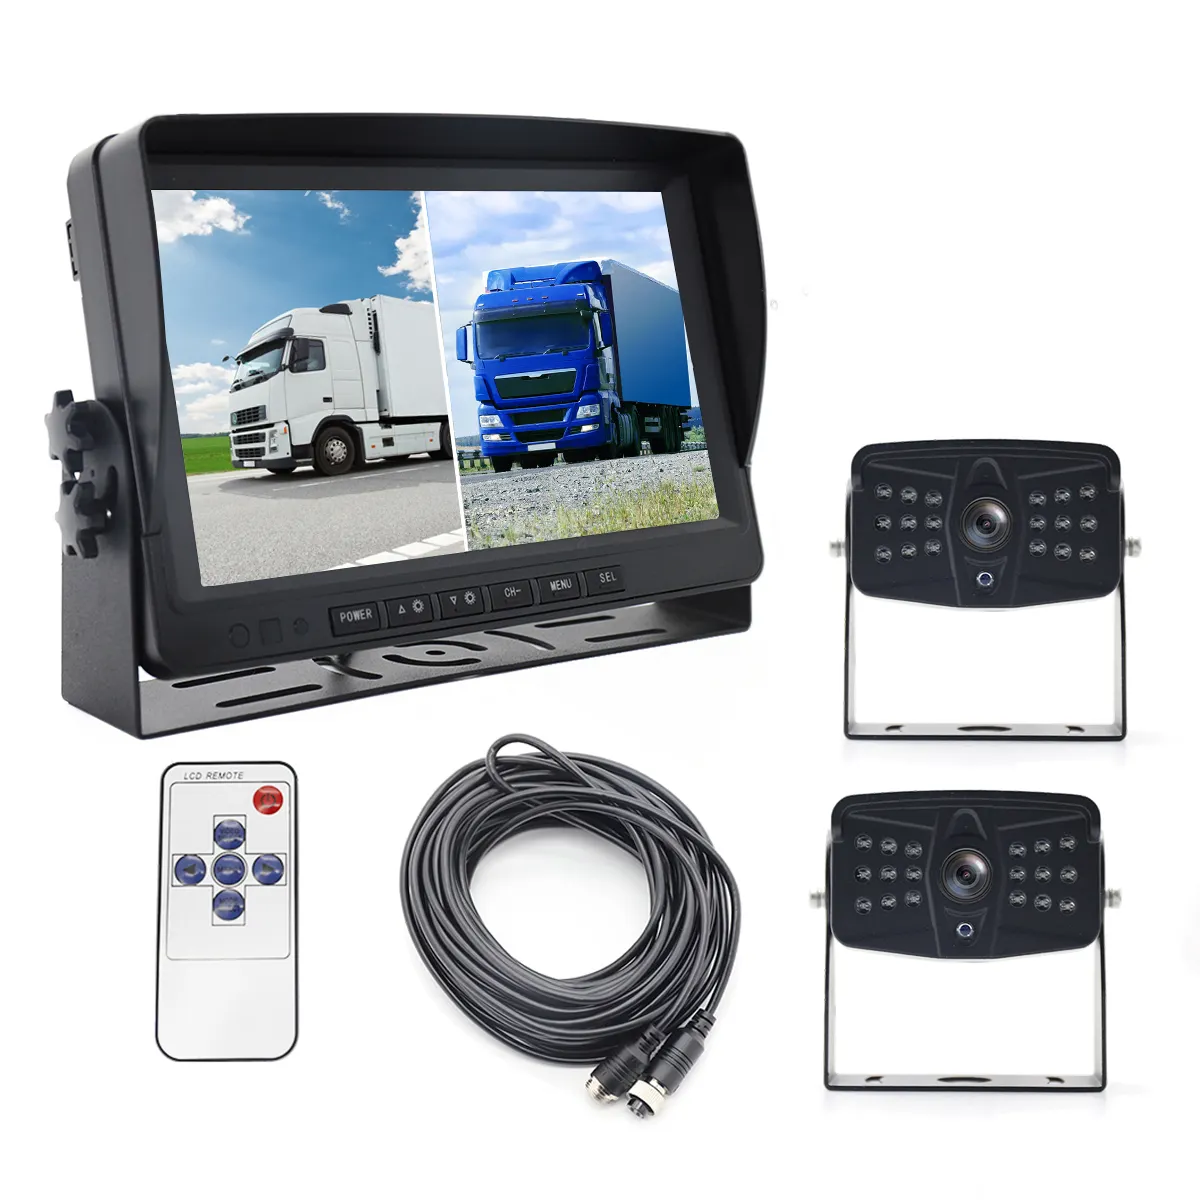 9 inch 2CH Car Monitor cho Auto 2 chia xe Màn hình Roof Mount Monitor Recorder AHD LCD hiển thị cho xe tải xe buýt RV phía sau xem máy ảnh